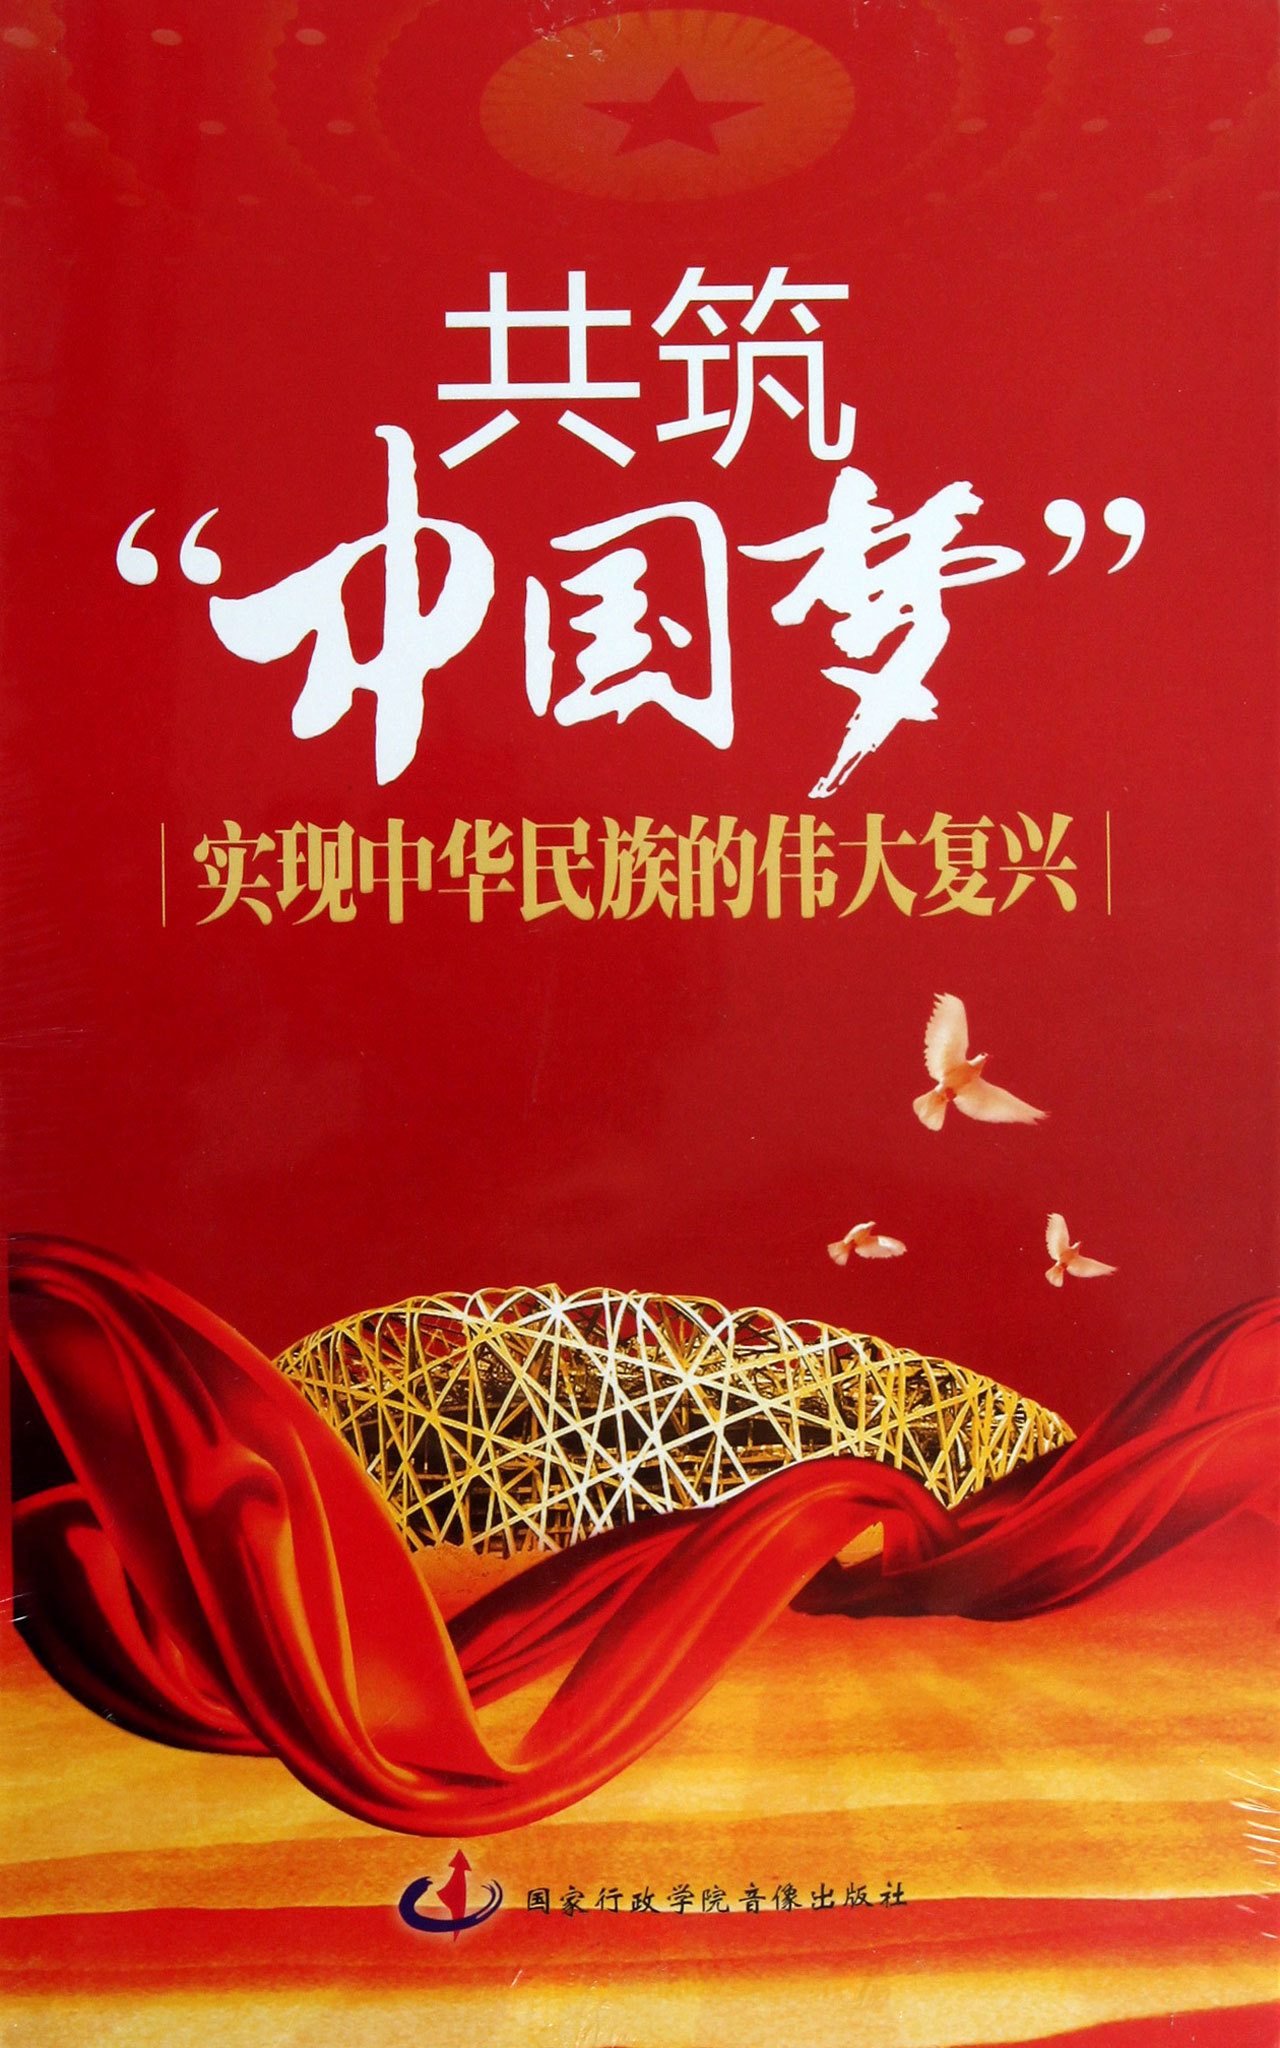 庆祝中华人民共和国成立69周年-陕西柯蓝电子有限公司